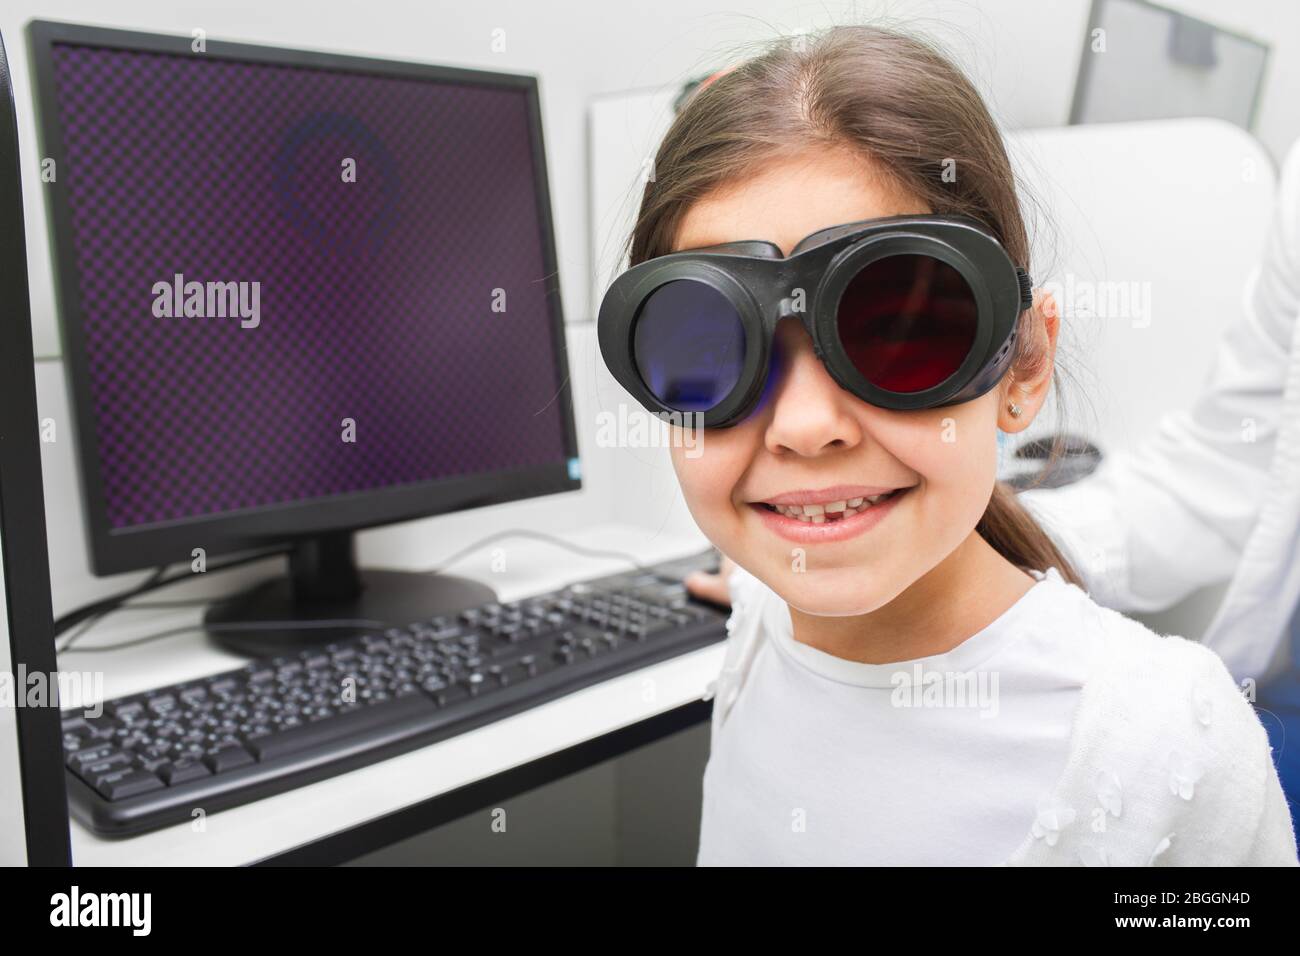 La petite fille aime recevoir un traitement informatique pour ses yeux. Traitement du strabismus. Traitement par amblyopie. Banque D'Images